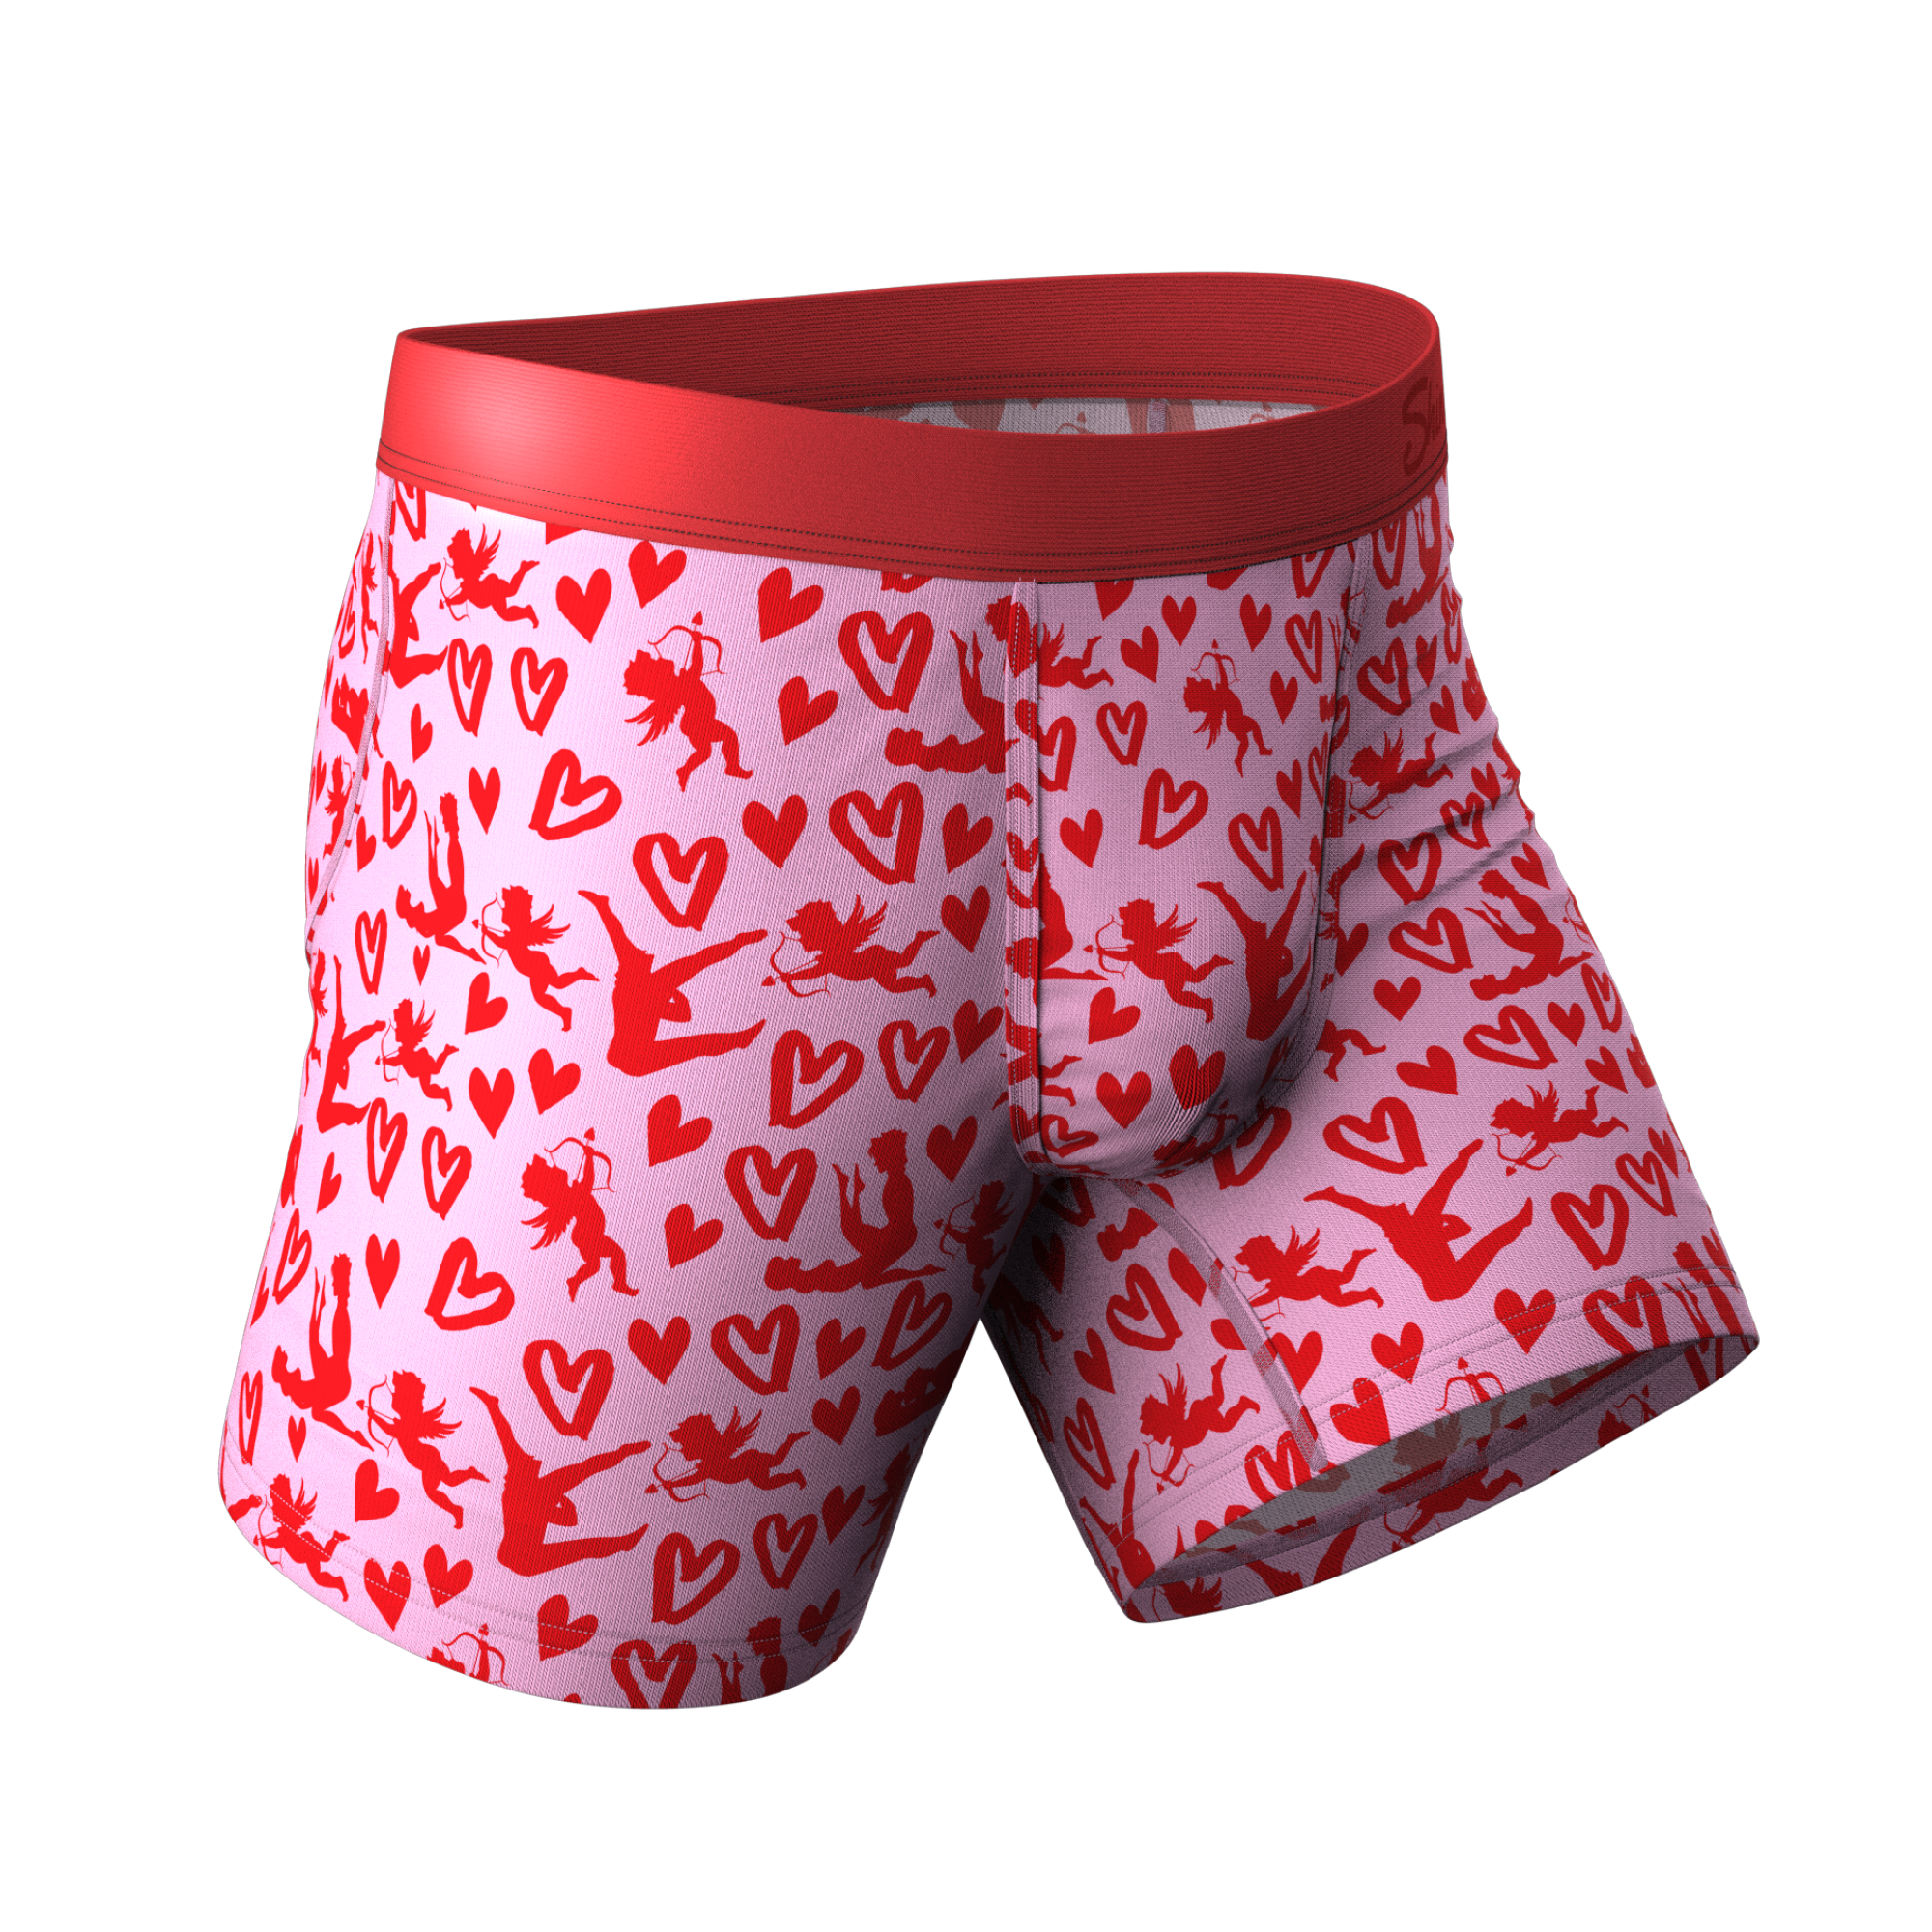 pj-c515 hollow out valentines day underwear